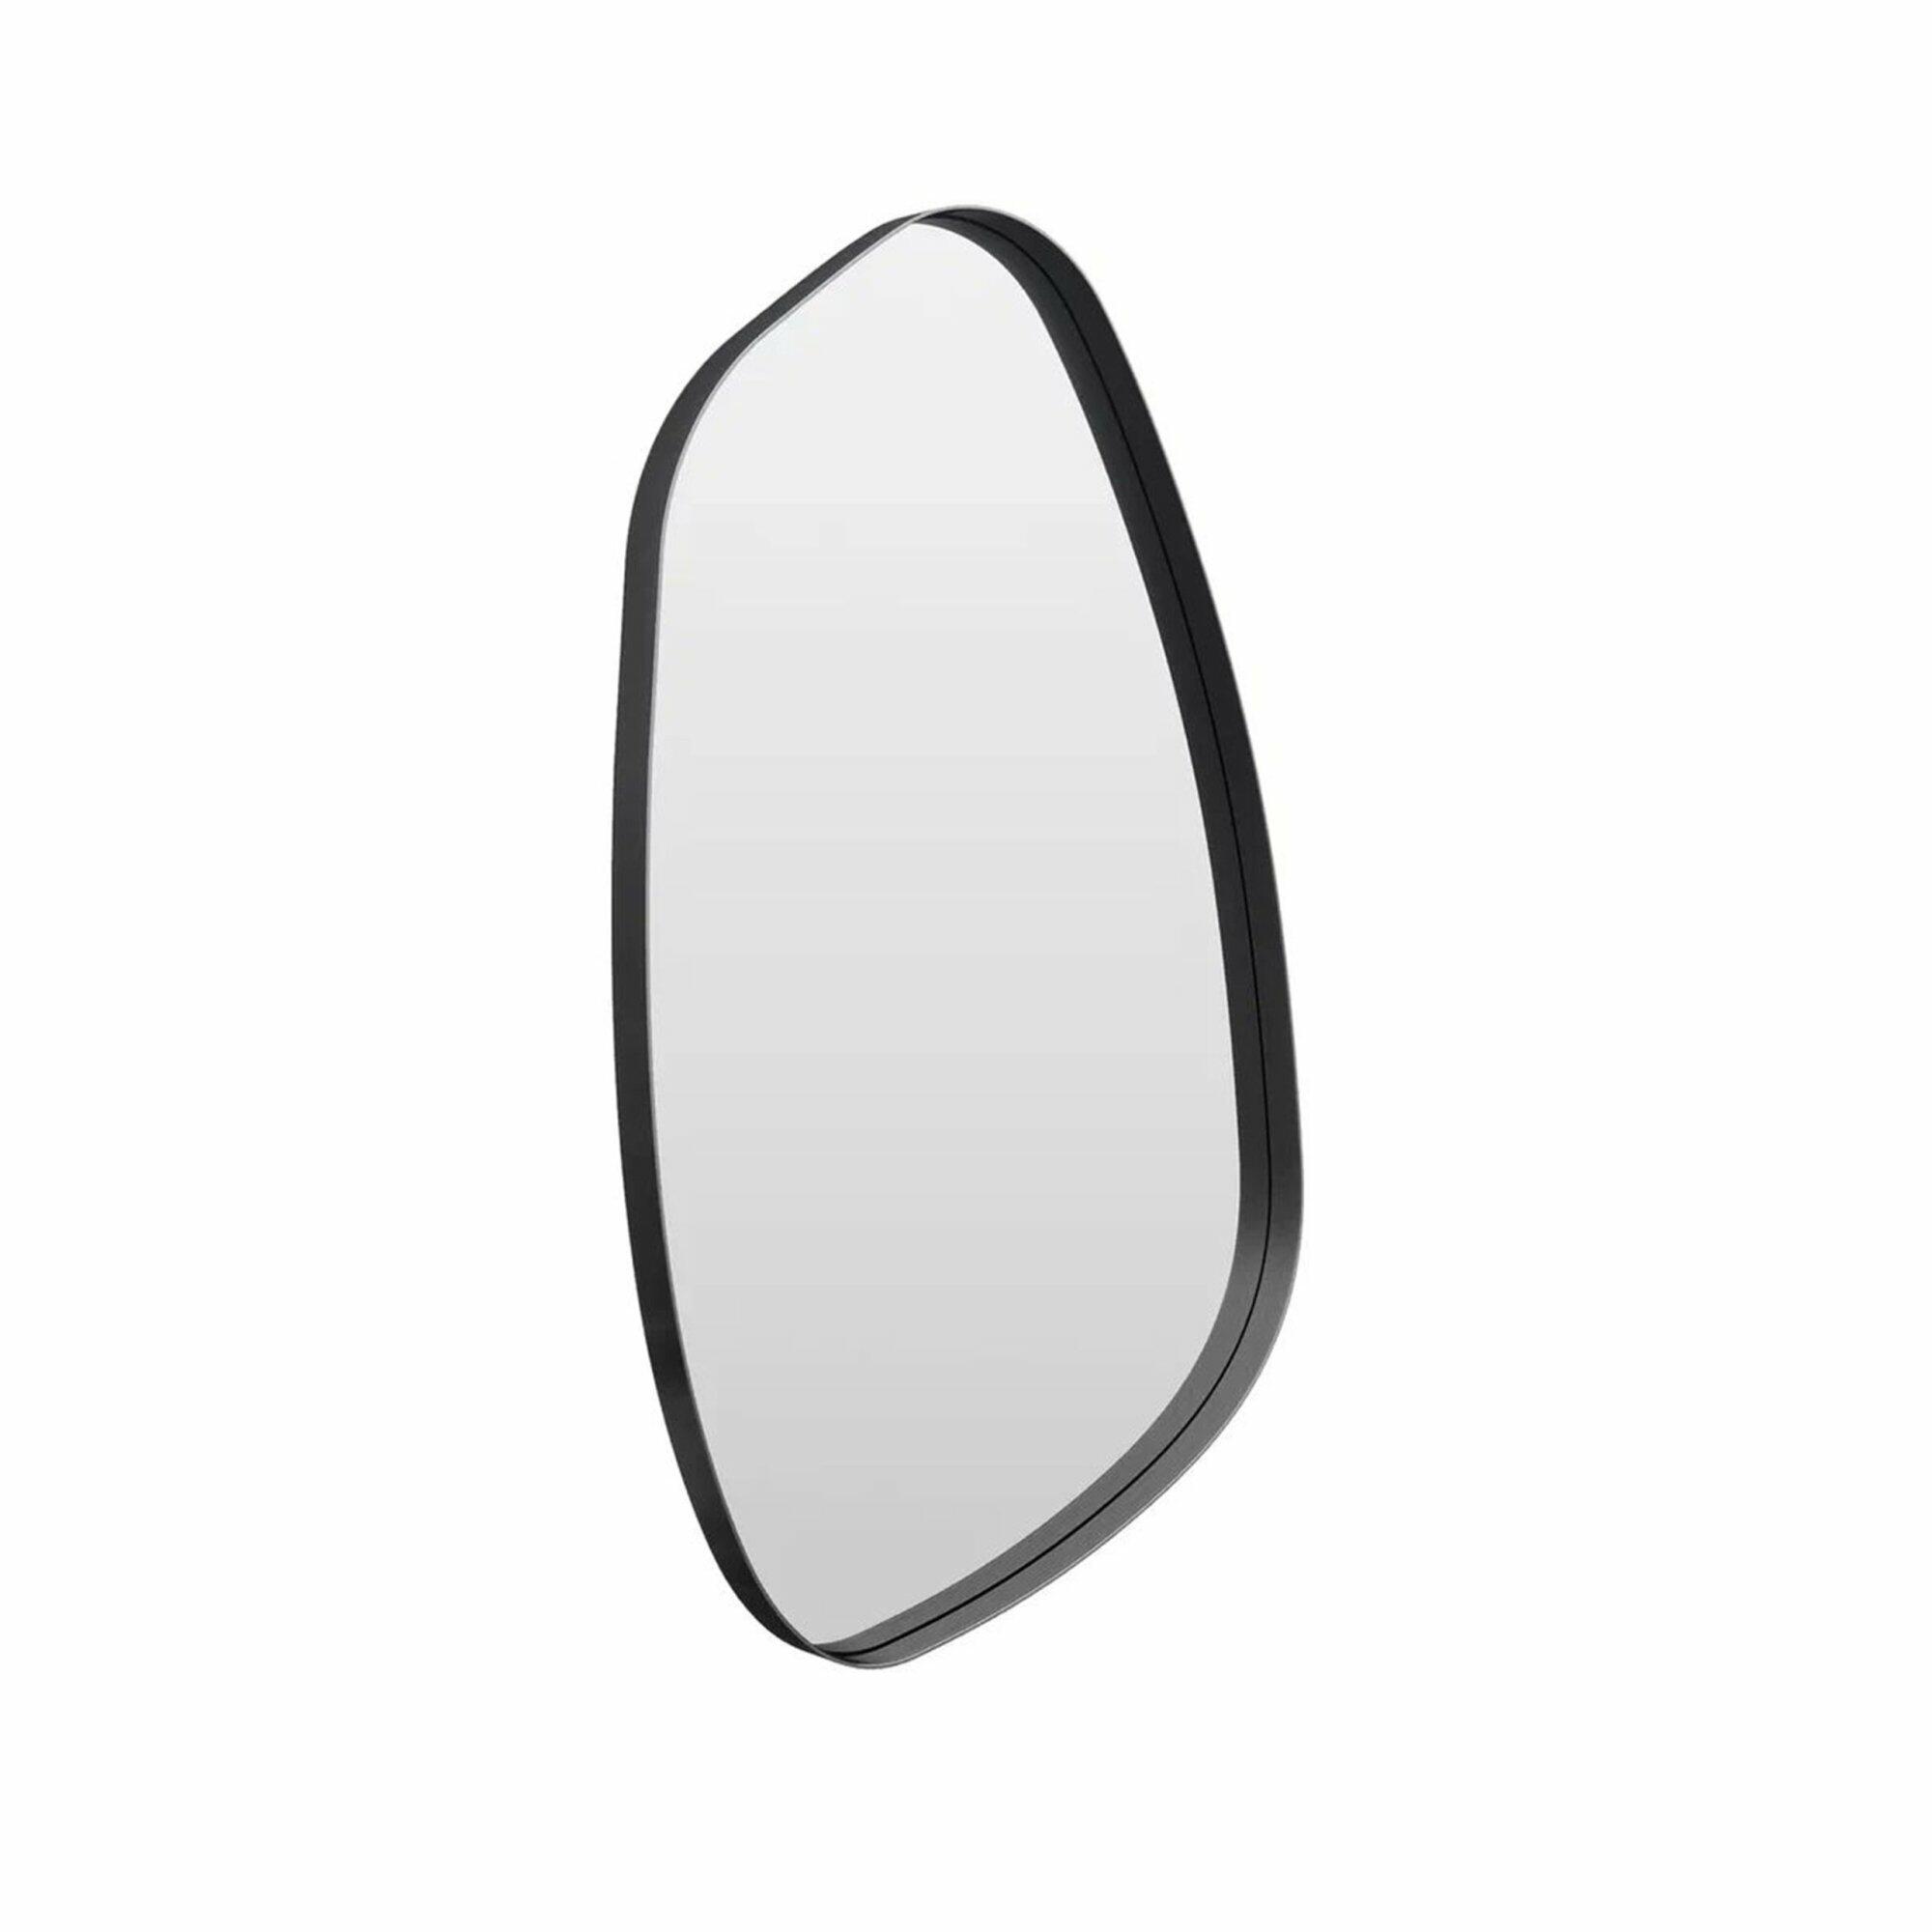 Овальное зеркало в металлической черной раме